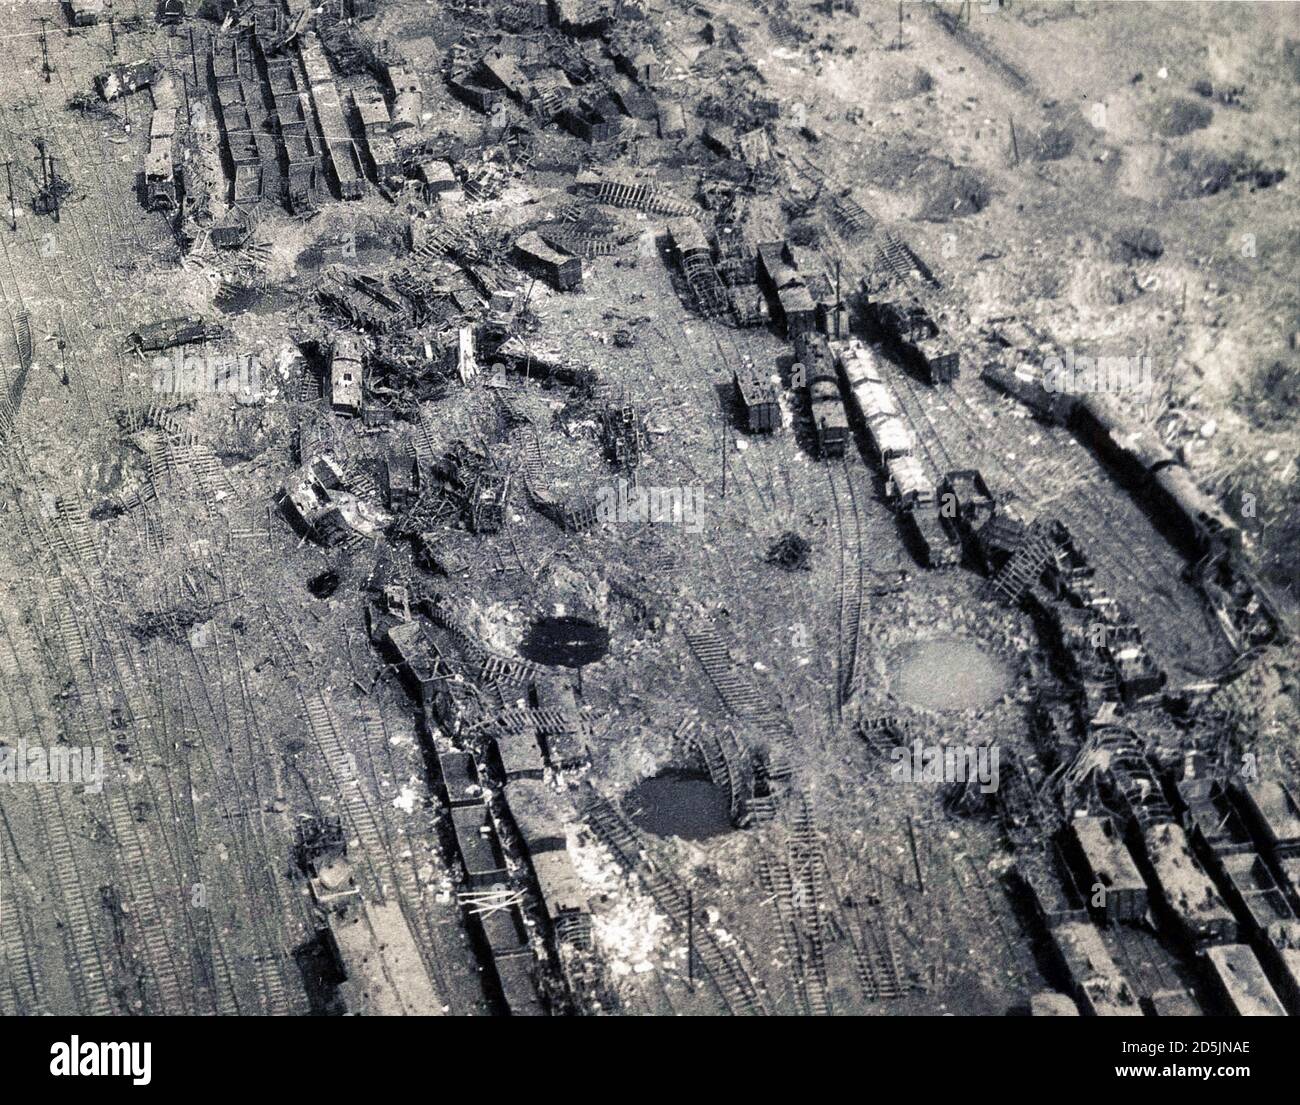 La jonction ferroviaire dans la ville de Limburg (Allemagne), détruite à la suite du bombardement des bombardiers légers et moyens de la 9e Division aérienne de t Banque D'Images